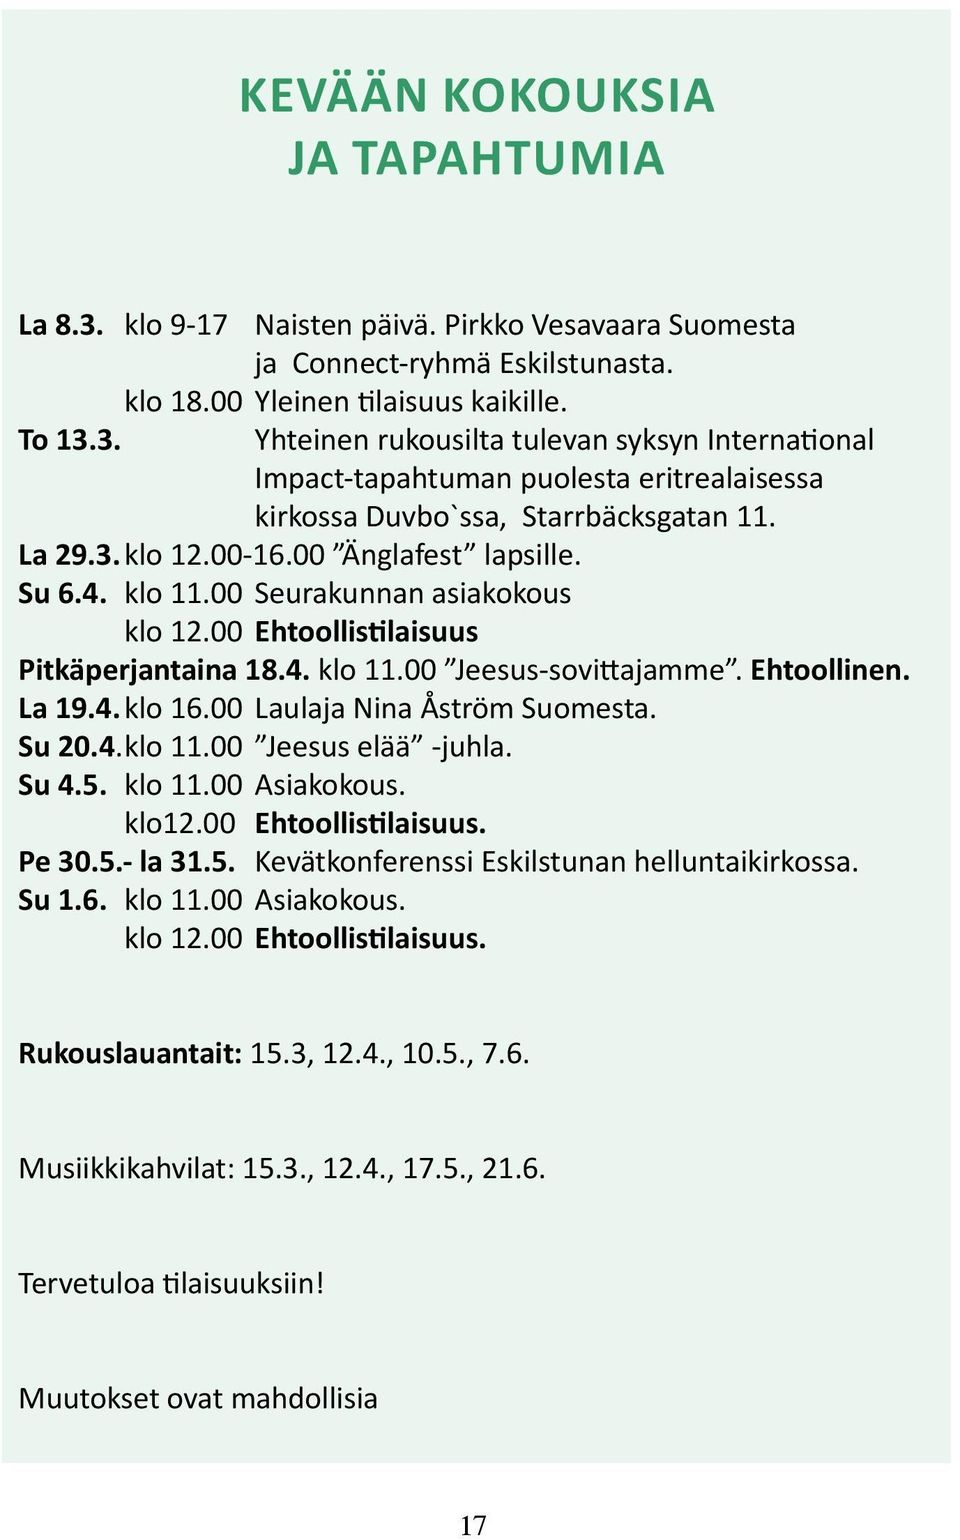 00 Laulaja Nina Åström Suomesta. Su 20.4. klo 11.00 Jeesus elää -juhla. Su 4.5. klo 11.00 Asiakokous. klo12.00 Ehtoollistilaisuus. Pe 30.5.- la 31.5. Kevätkonferenssi Eskilstunan helluntaikirkossa.